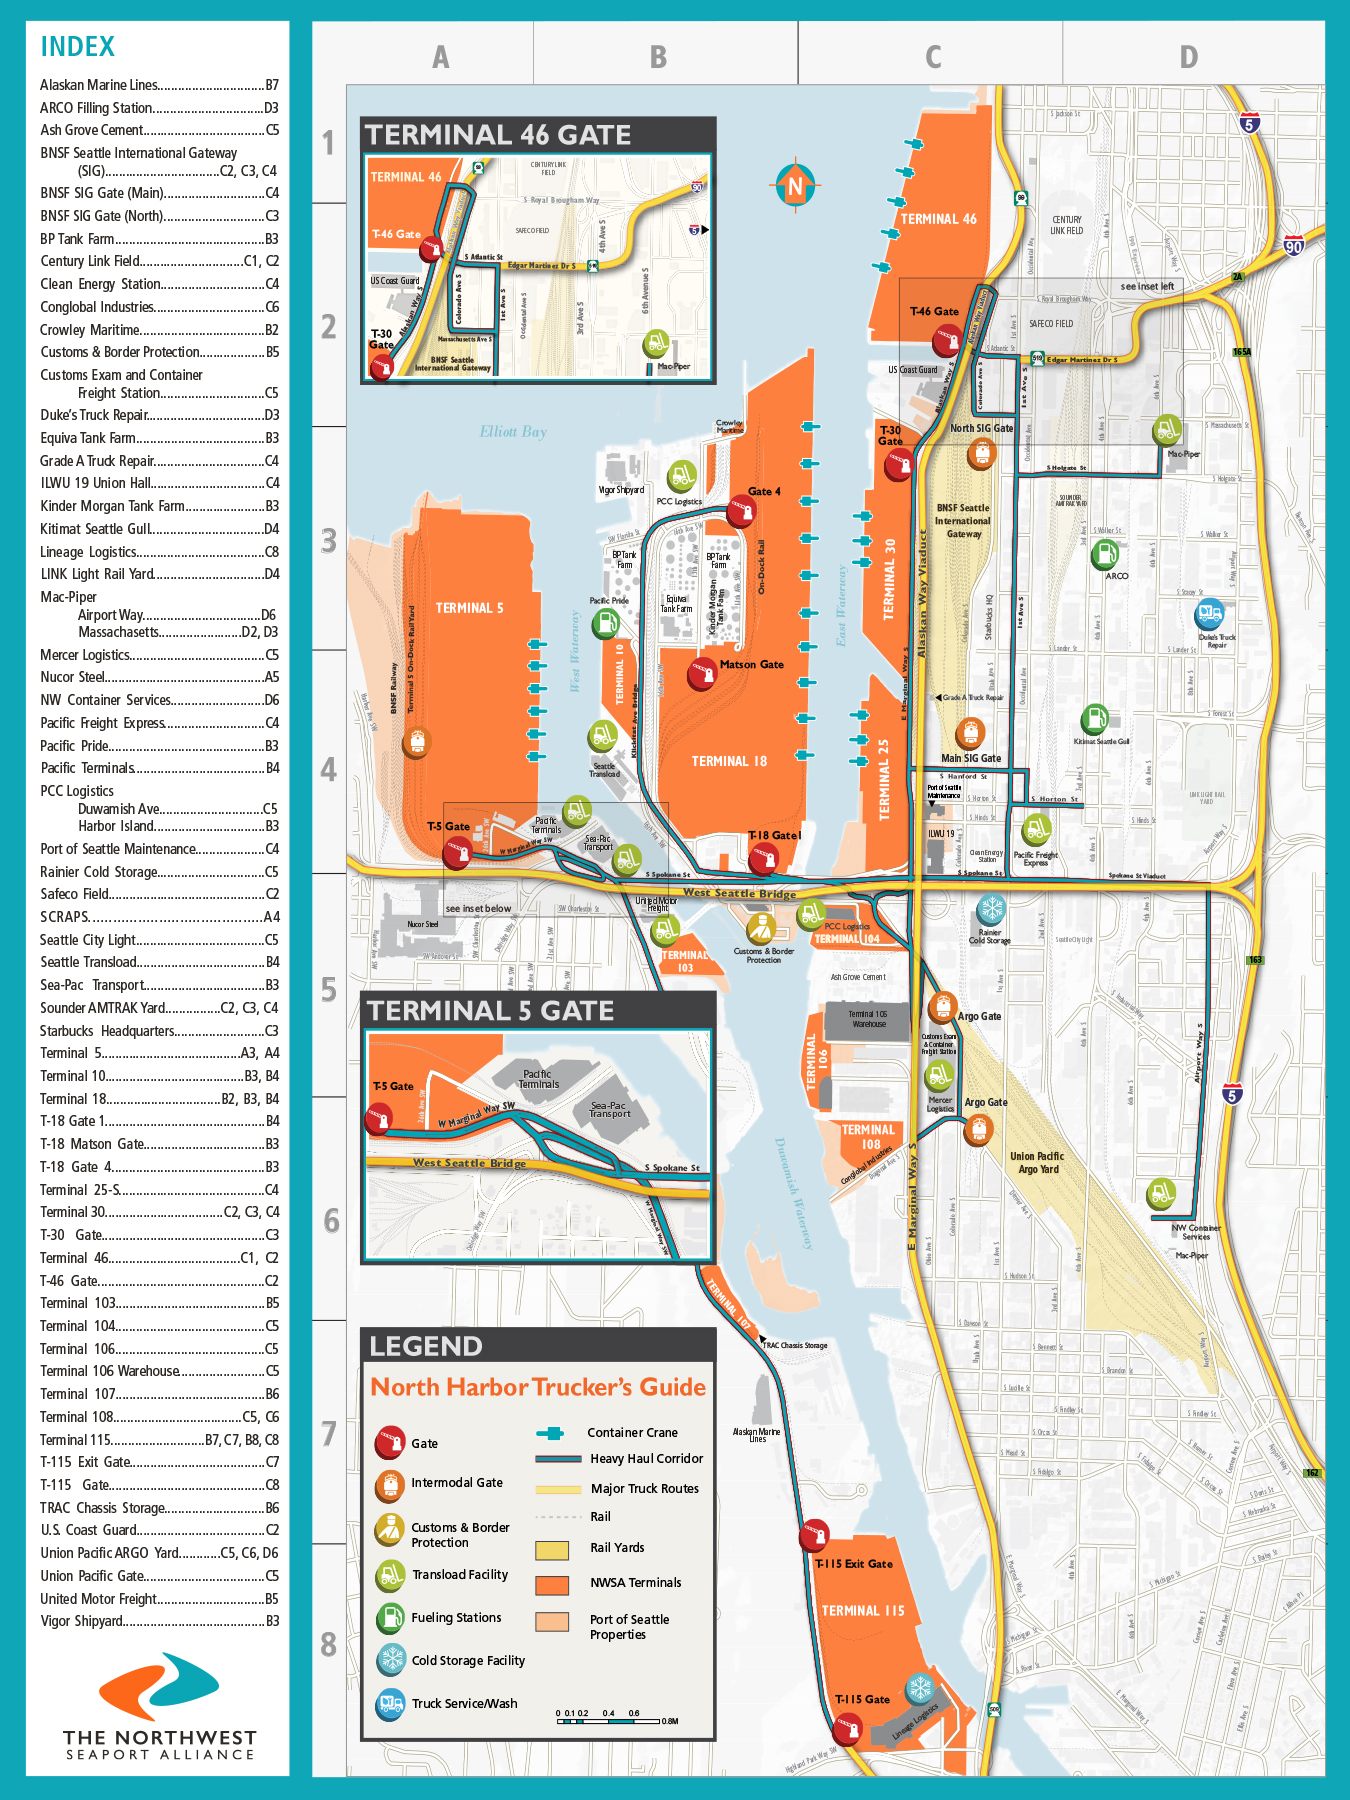 map of seattle washington cruise port